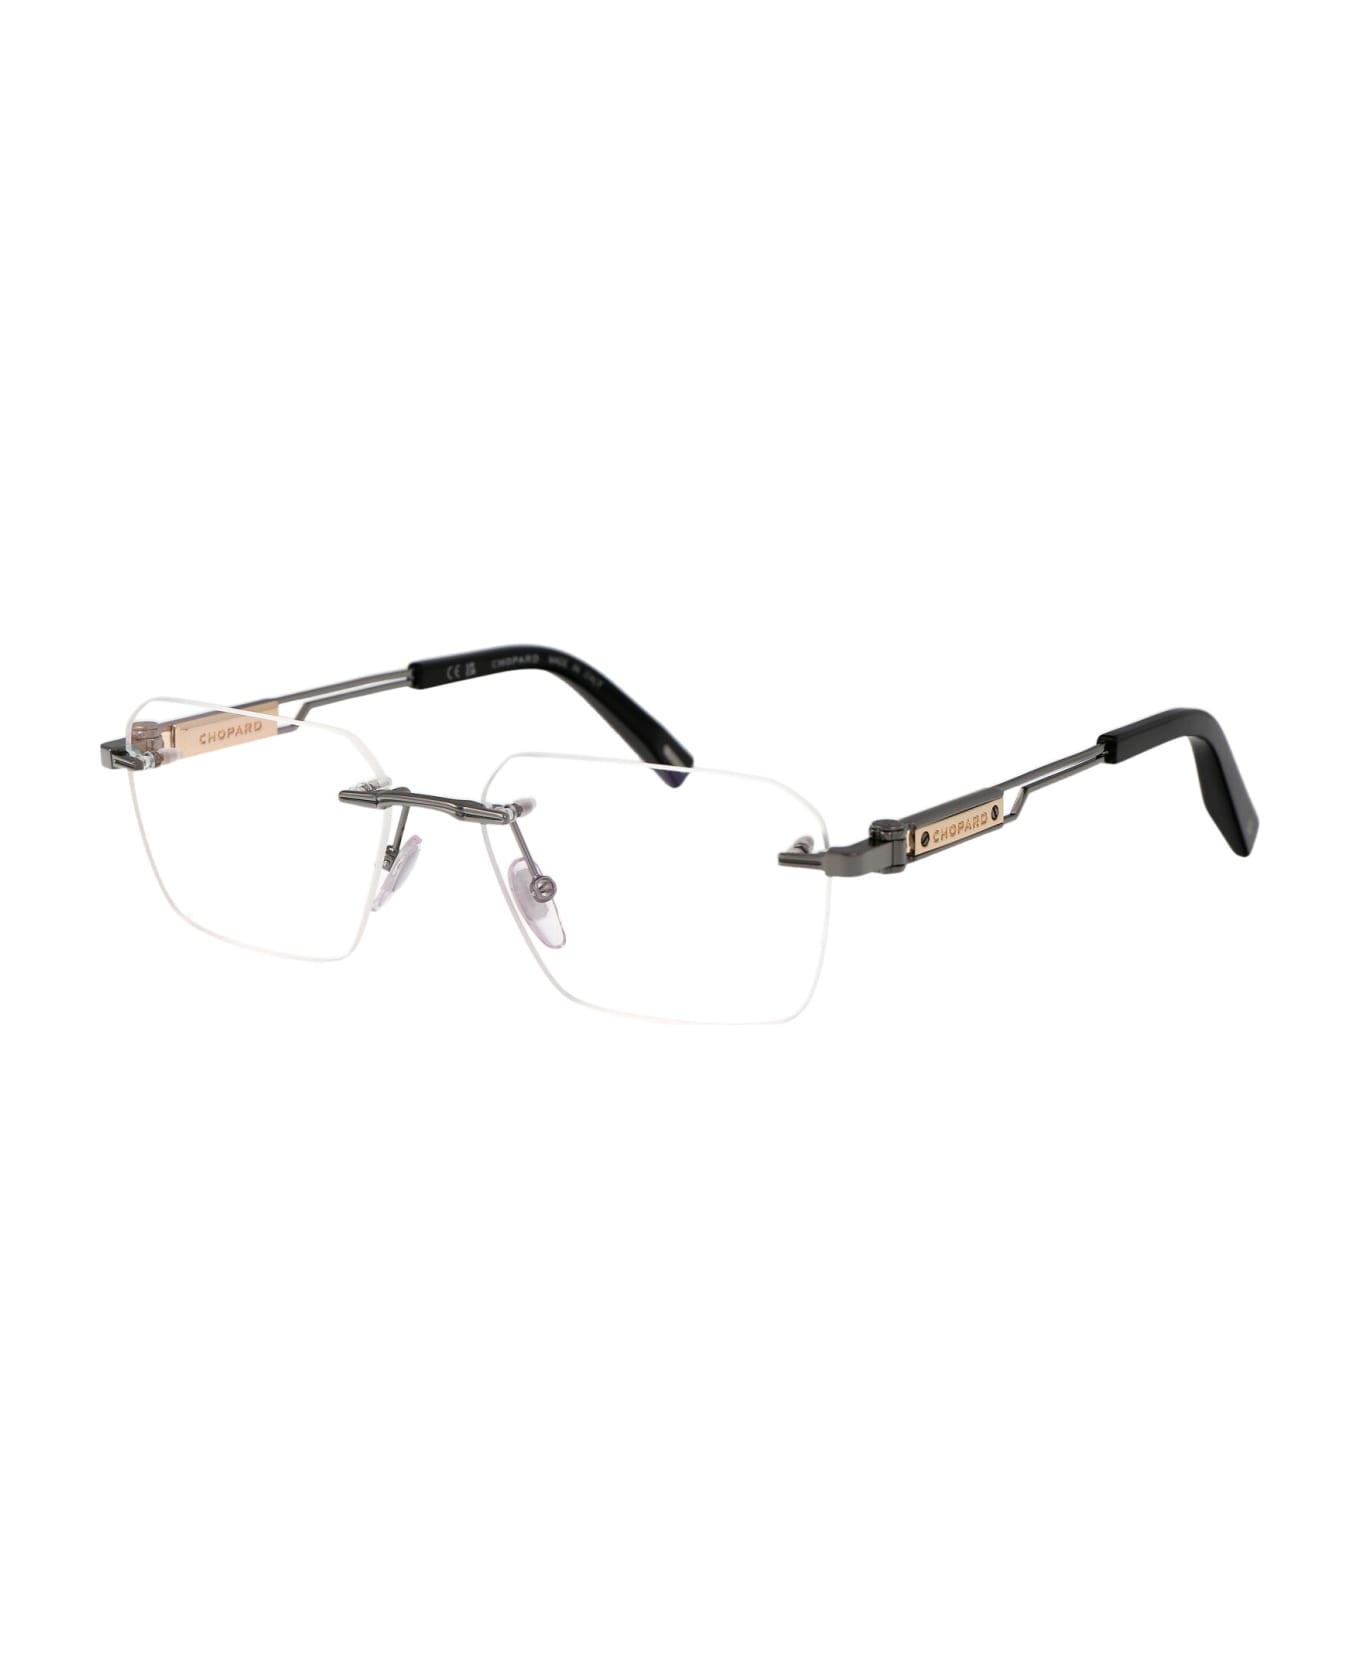 Chopard Vchg87 Glasses - 0509 RUTENIO LUCIDO TOTALE